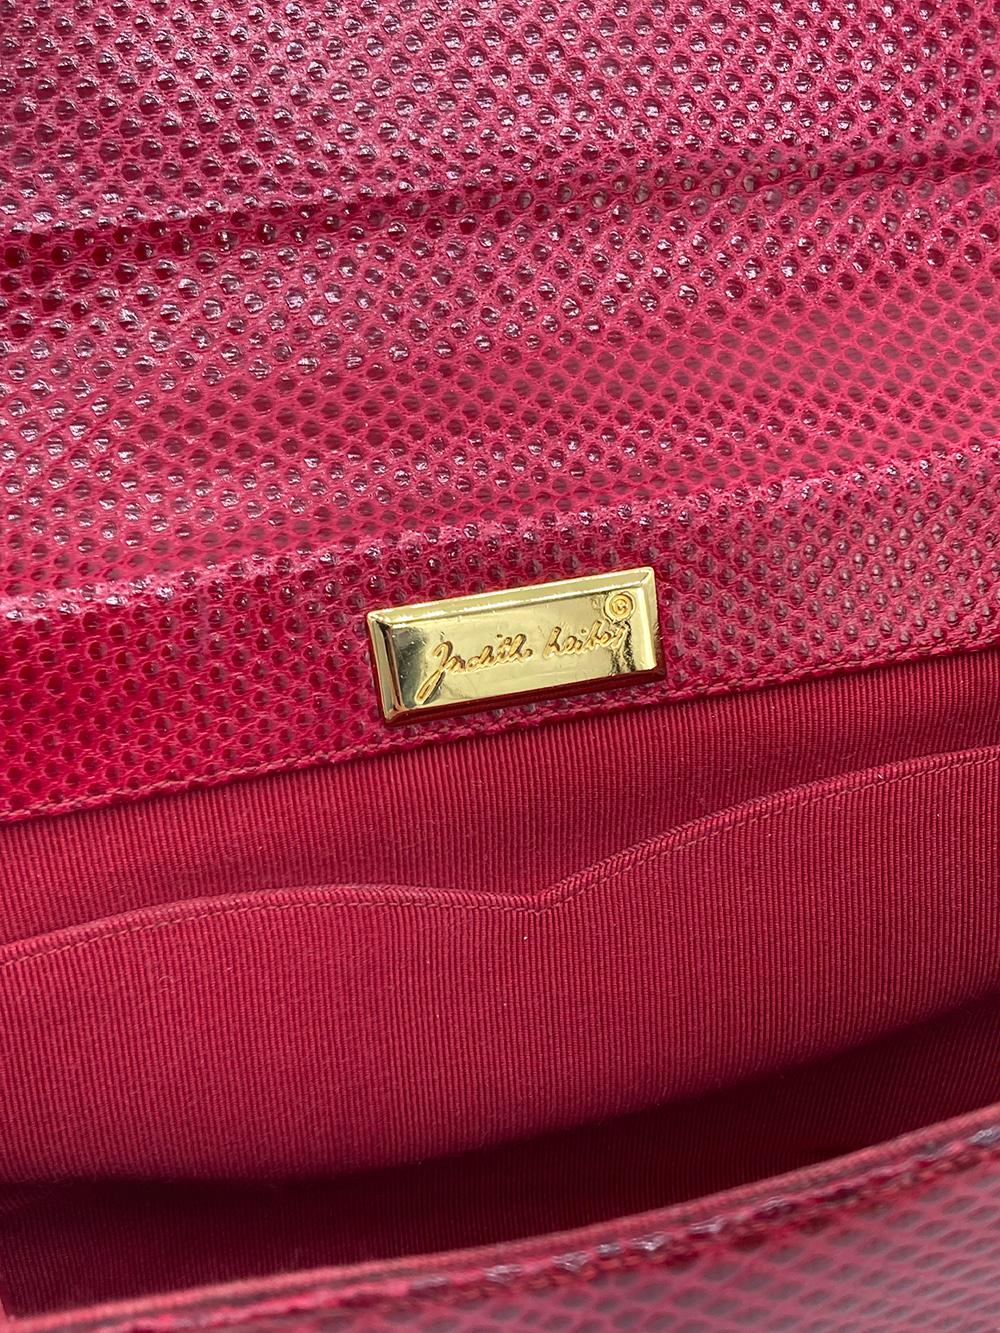 Judith Leiber Red Lizard Tassel Charm Strap Clutch Shoulder Bag For Sale 8